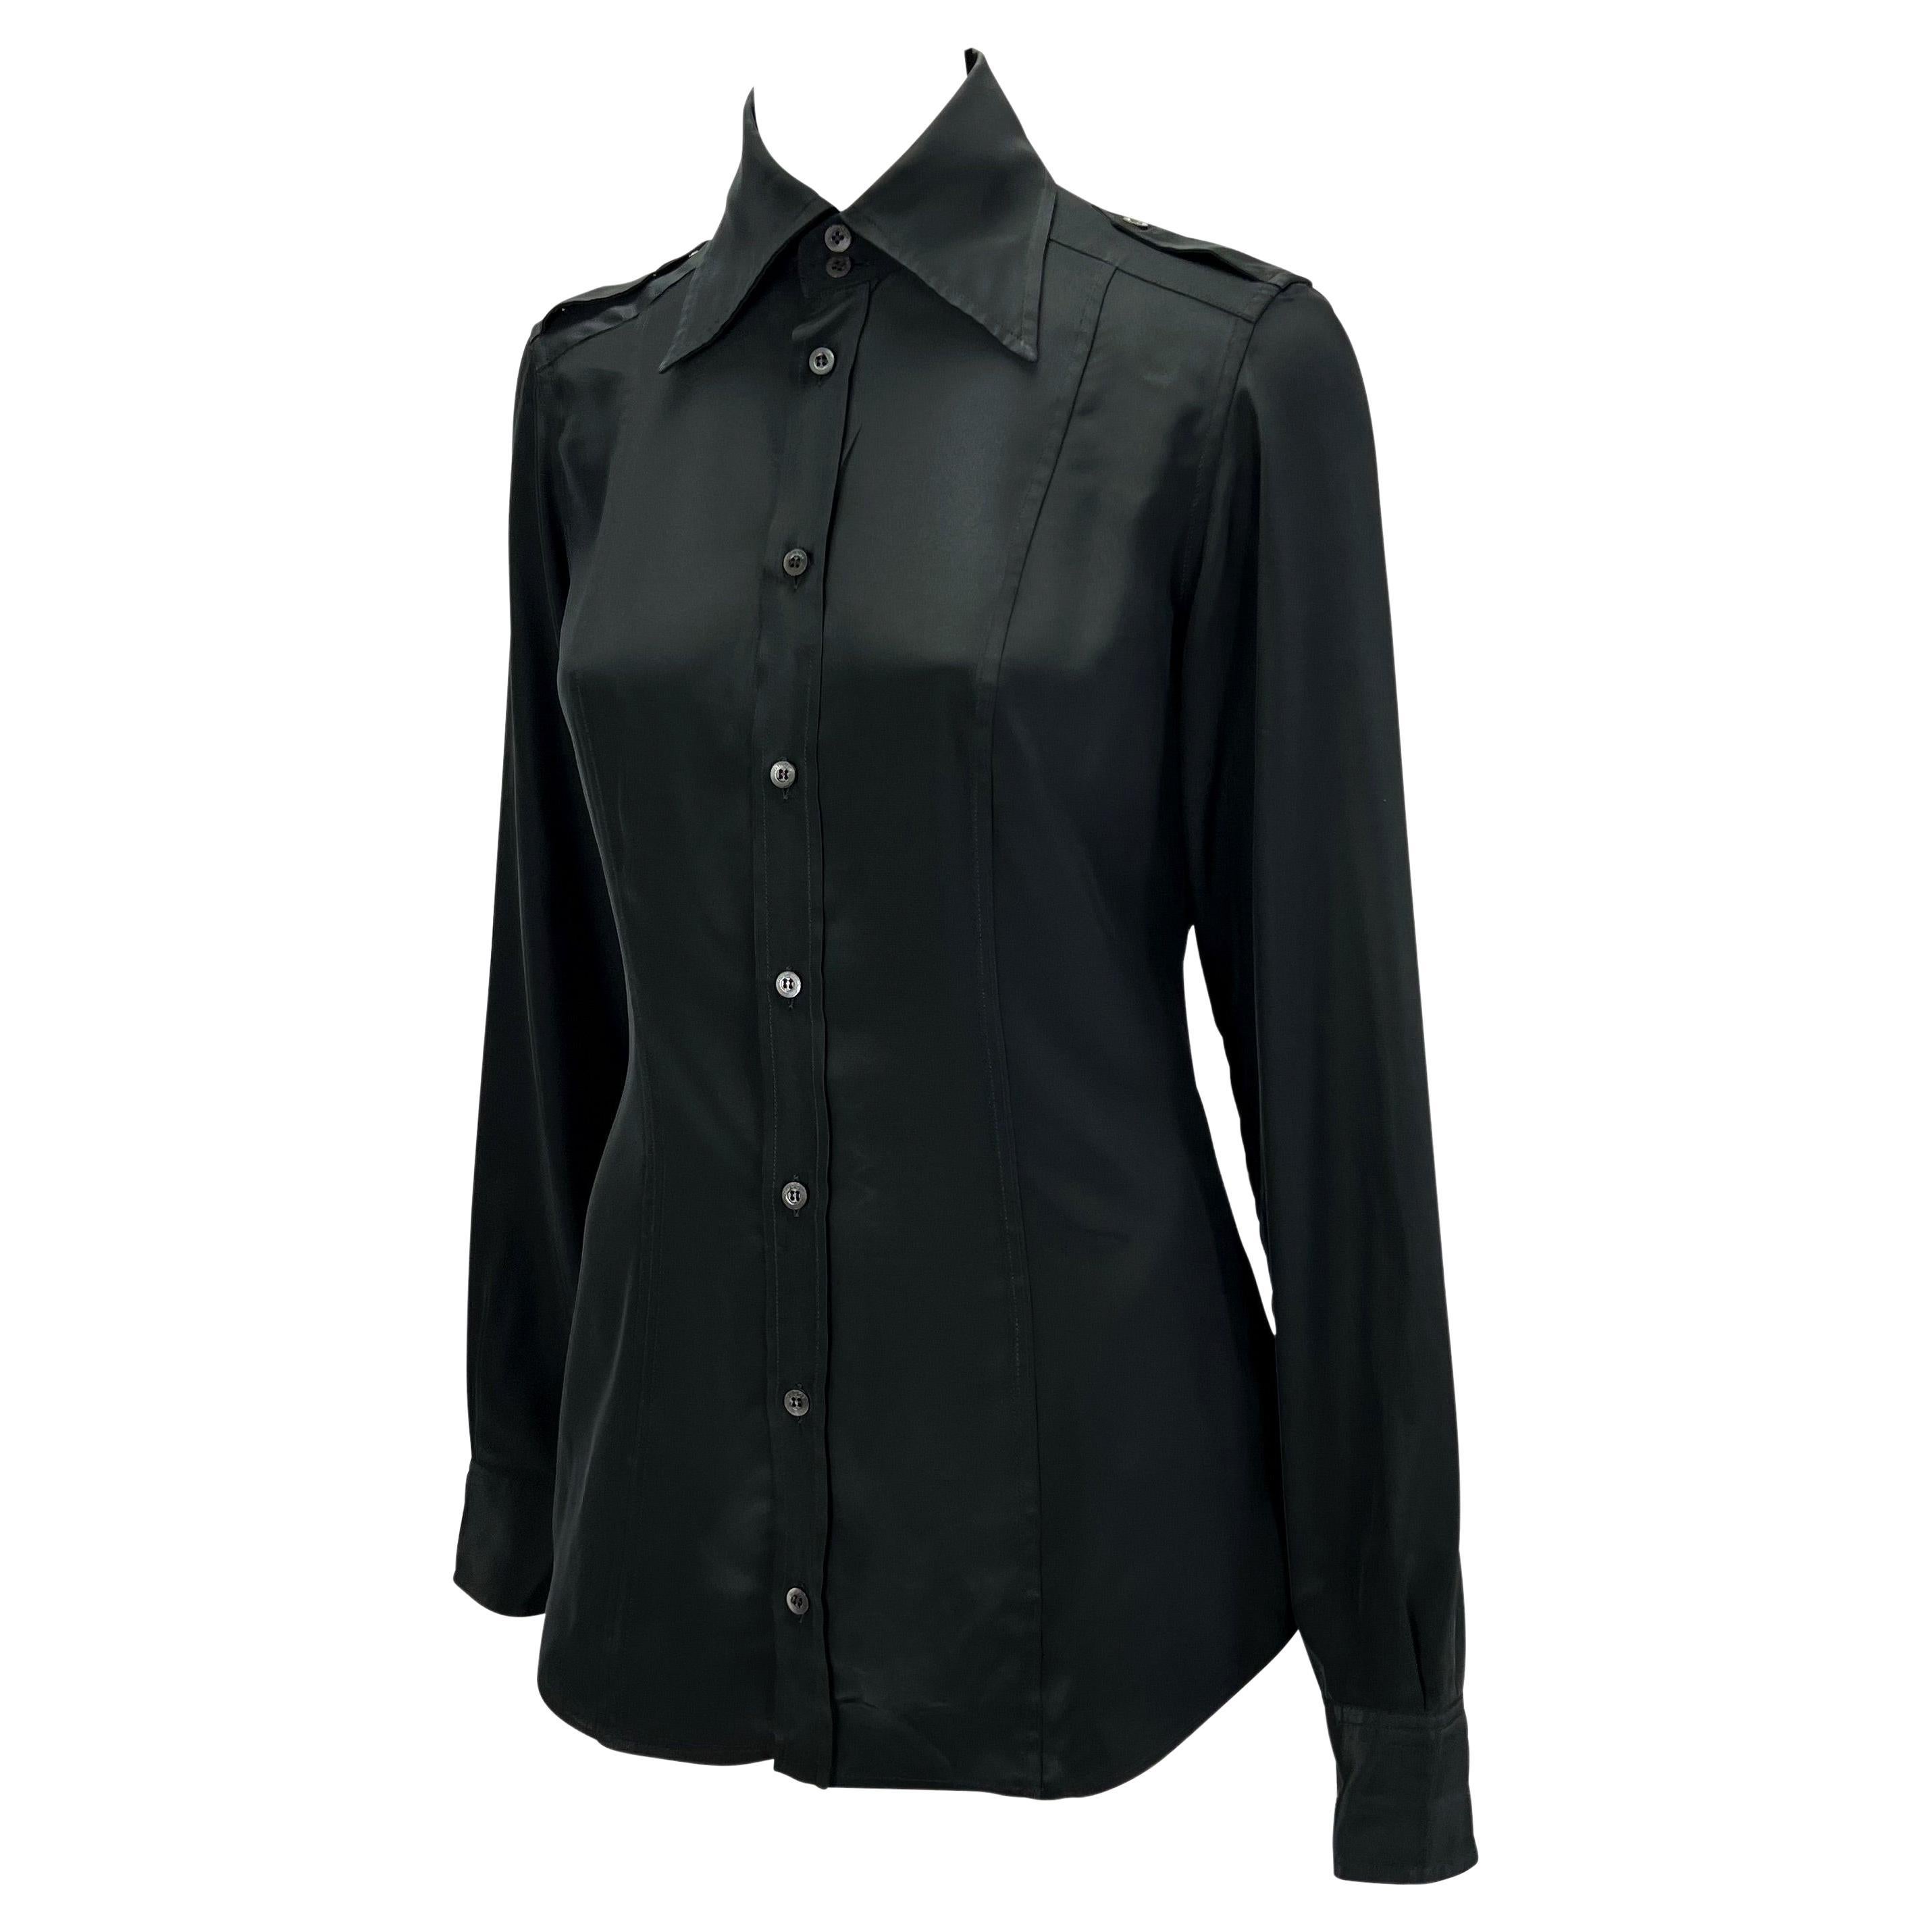 Wir präsentieren ein schwarzes Gucci Oberteil mit Kragen und Knopfleiste, entworfen von Tom Ford. Dieses Oberteil aus leichtem Polyester ist mit langen Ärmeln, einem markanten Kragen und Schulterklappen ausgestattet. Dieses Hemd, das für die